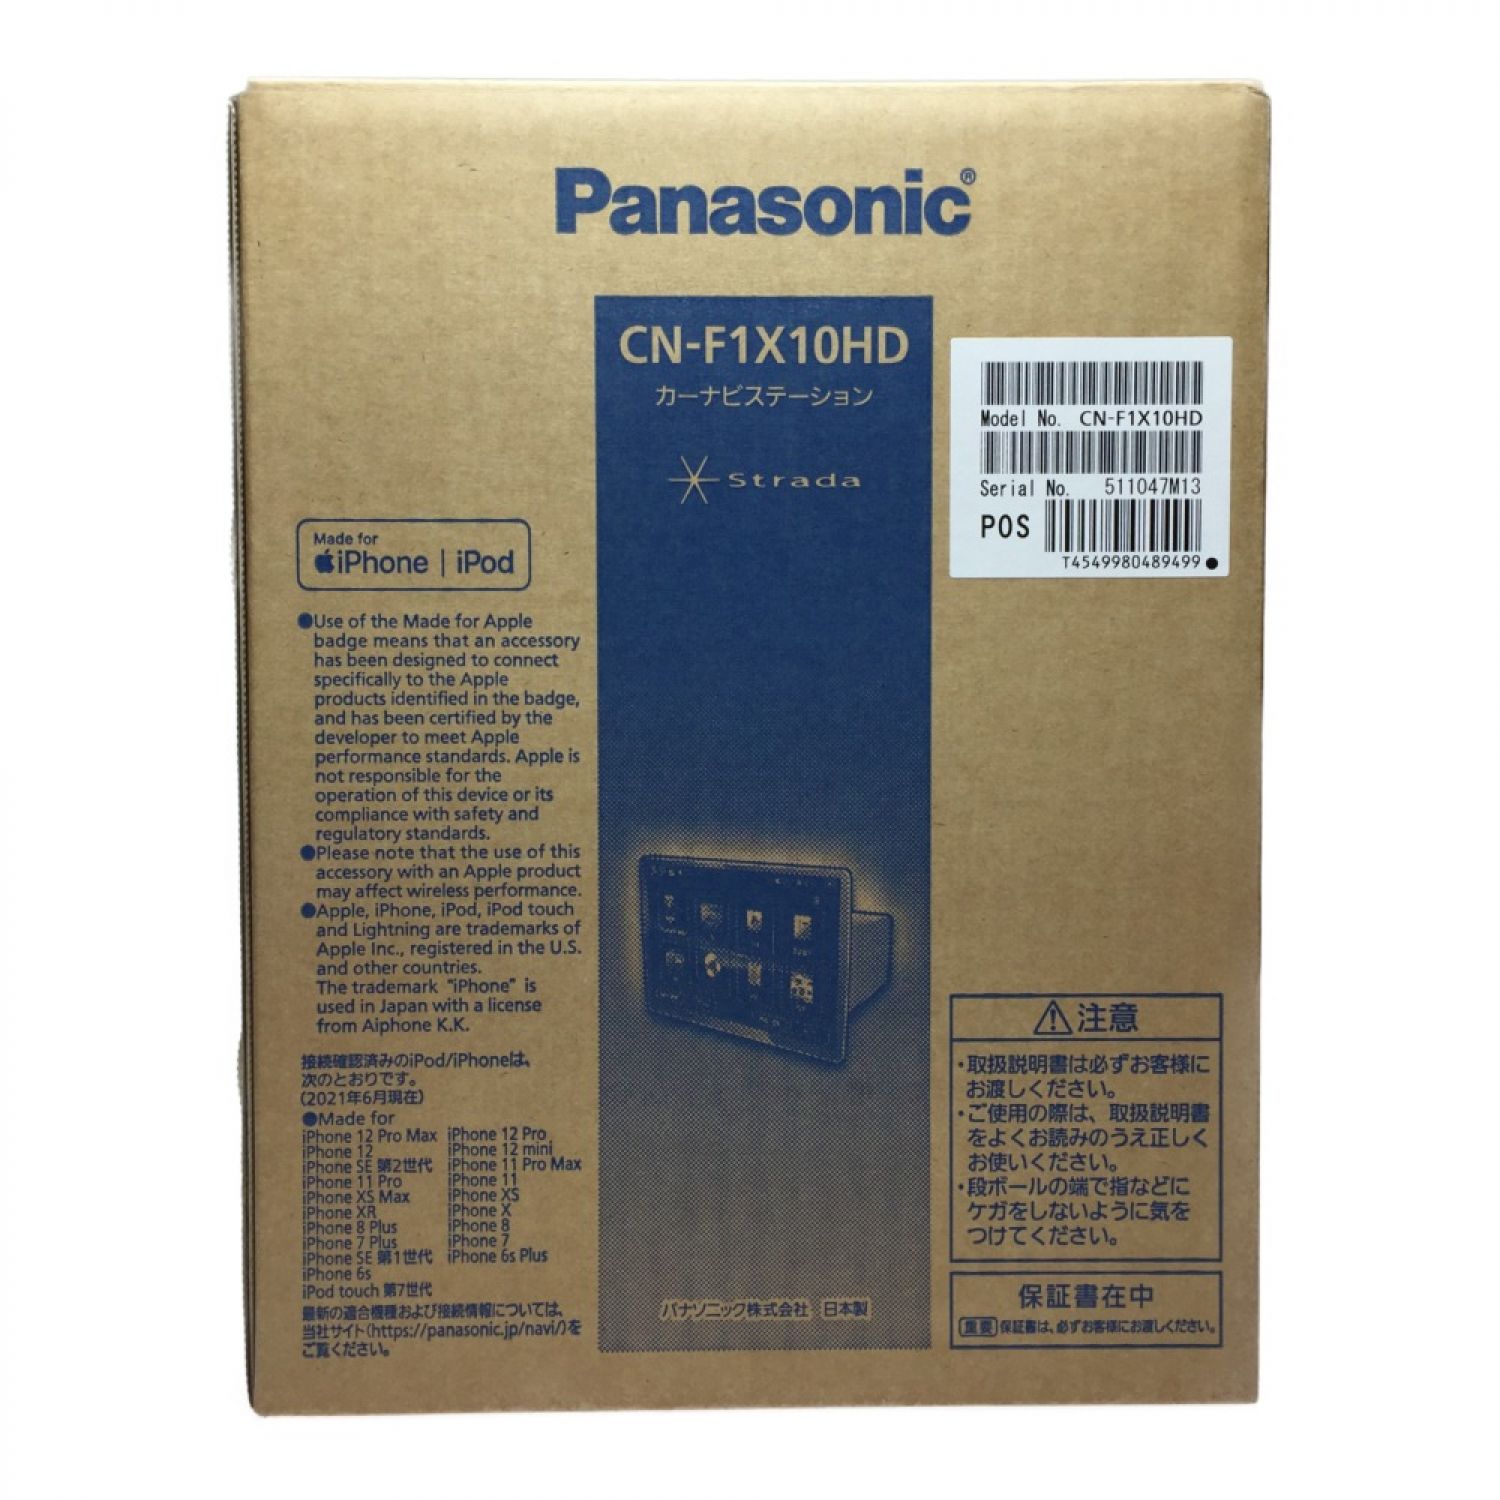 Panasonic cn-f1x10hd 新品未使用